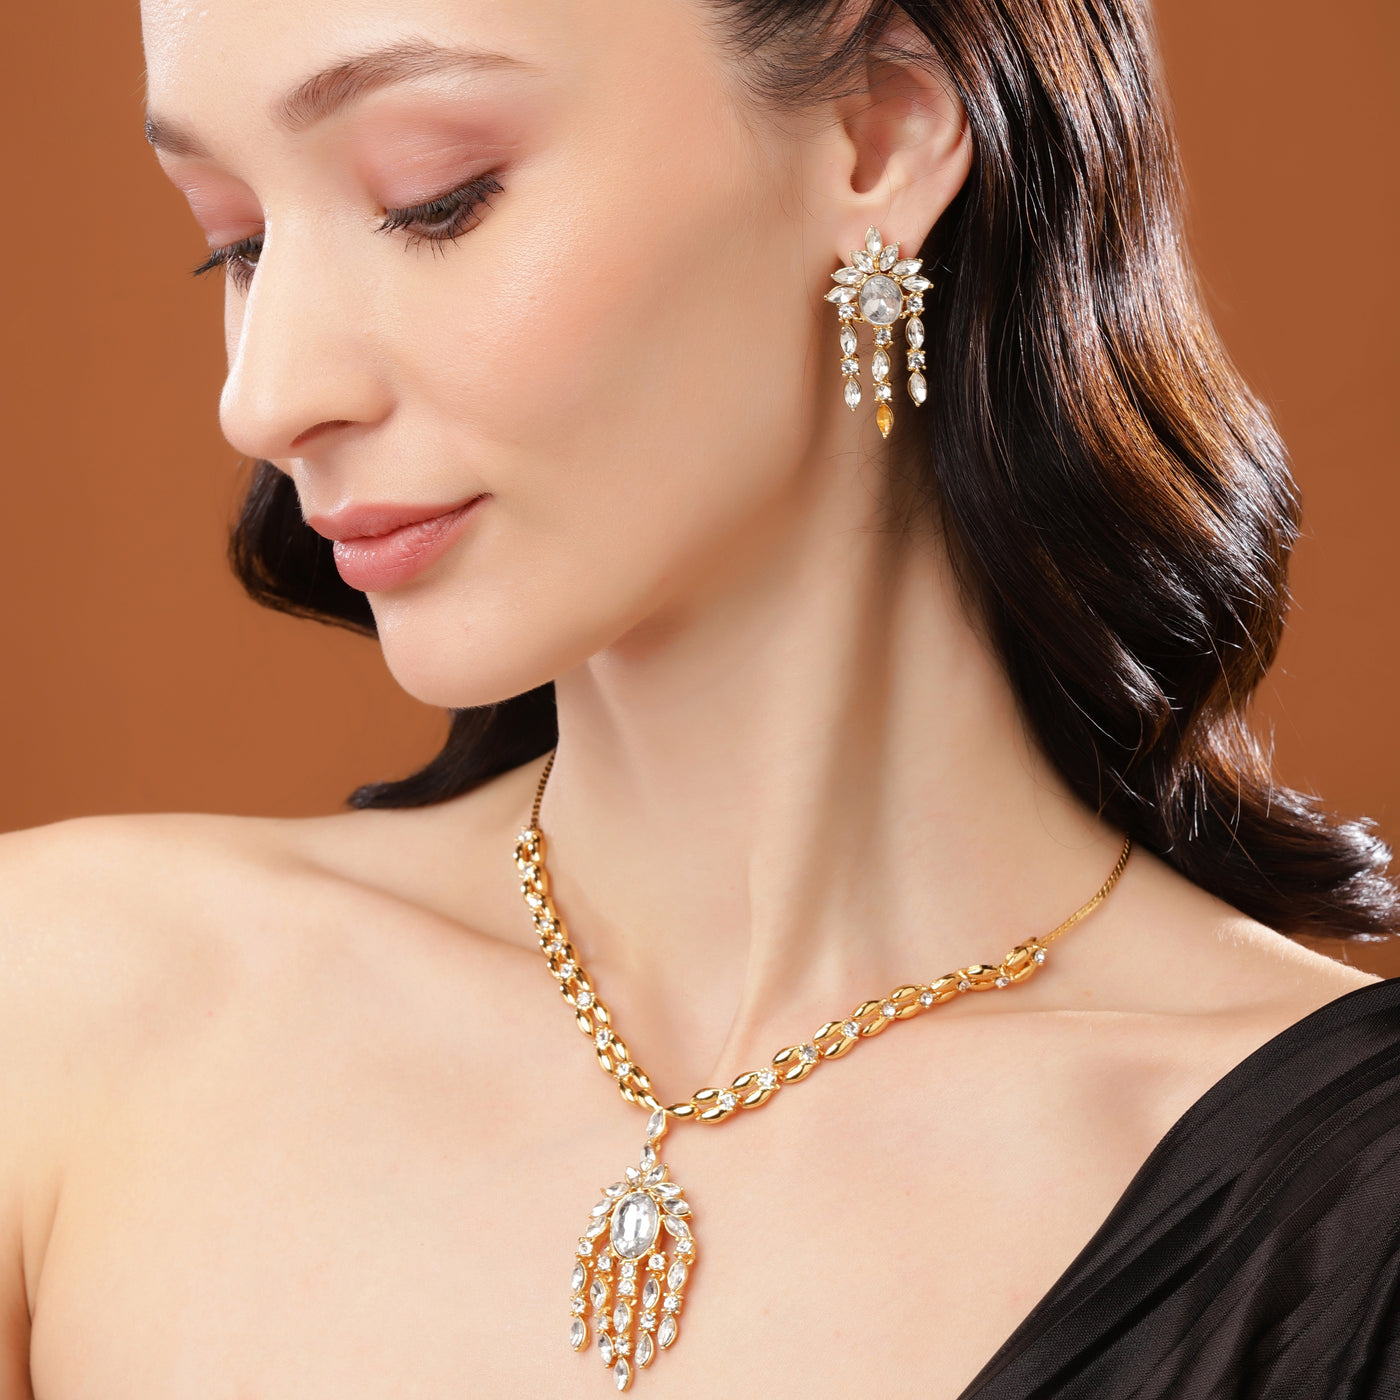 Estele 24 Kt Gold Plated Dangler with Bagettes Necklace Set for Women